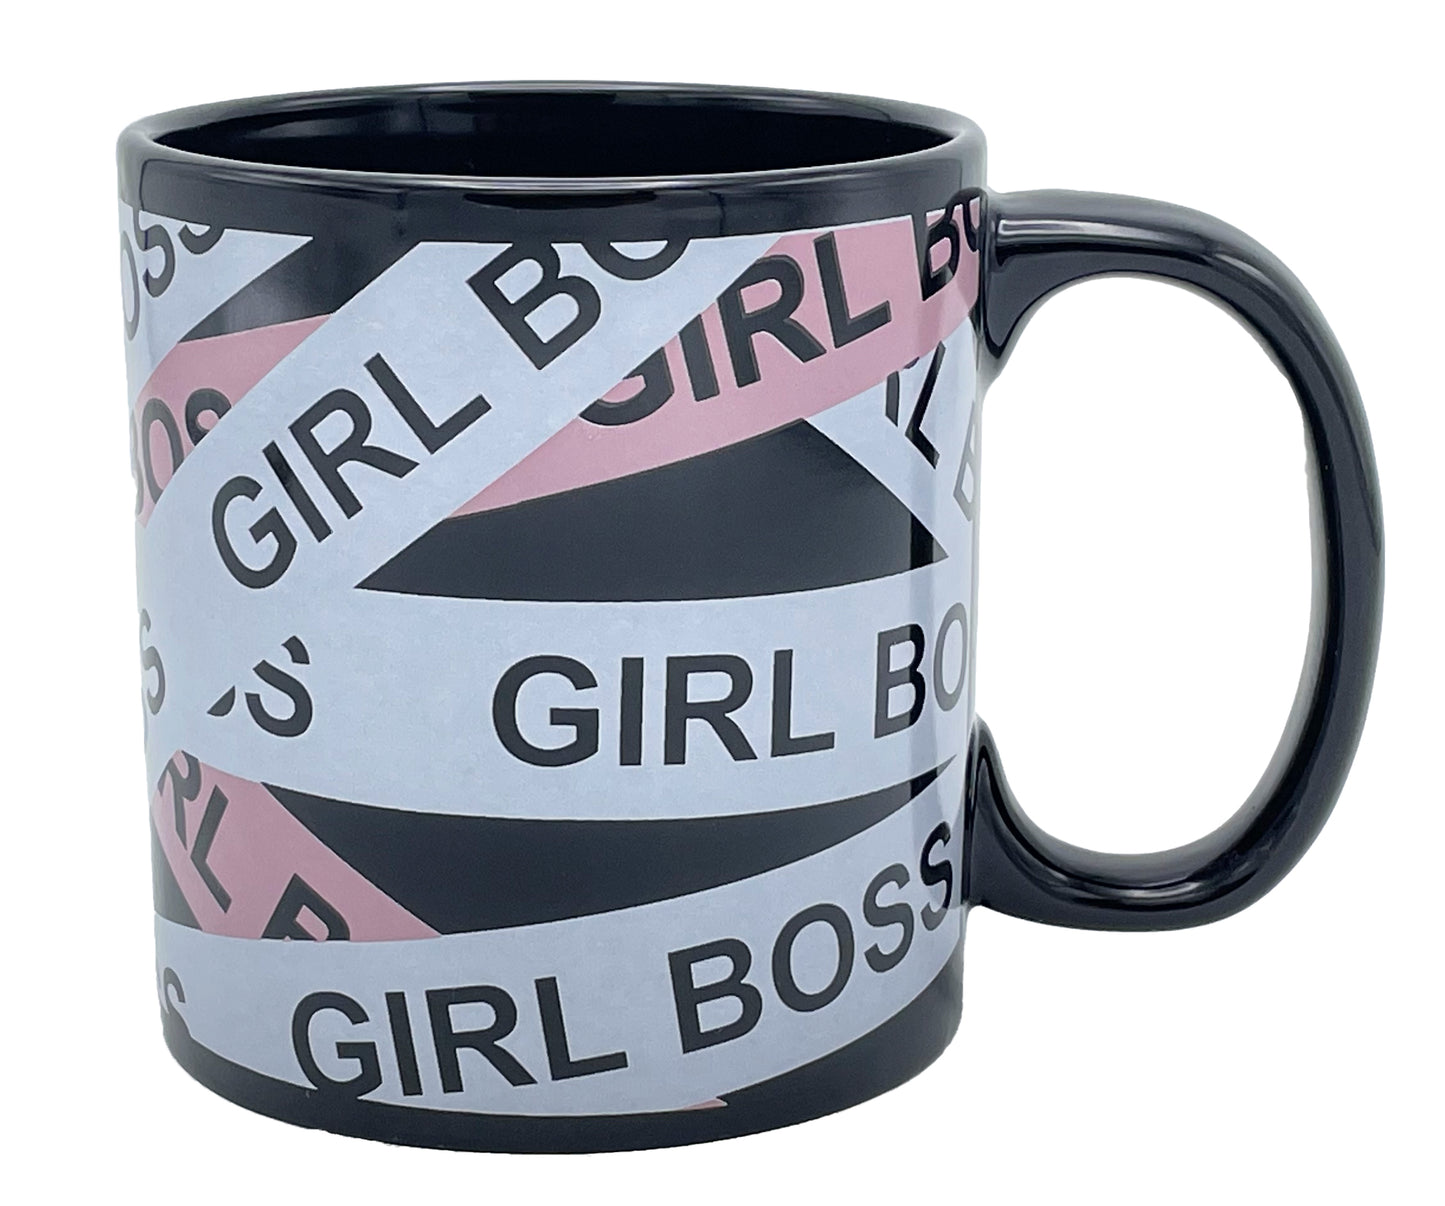 Giant Girl Boss Mug